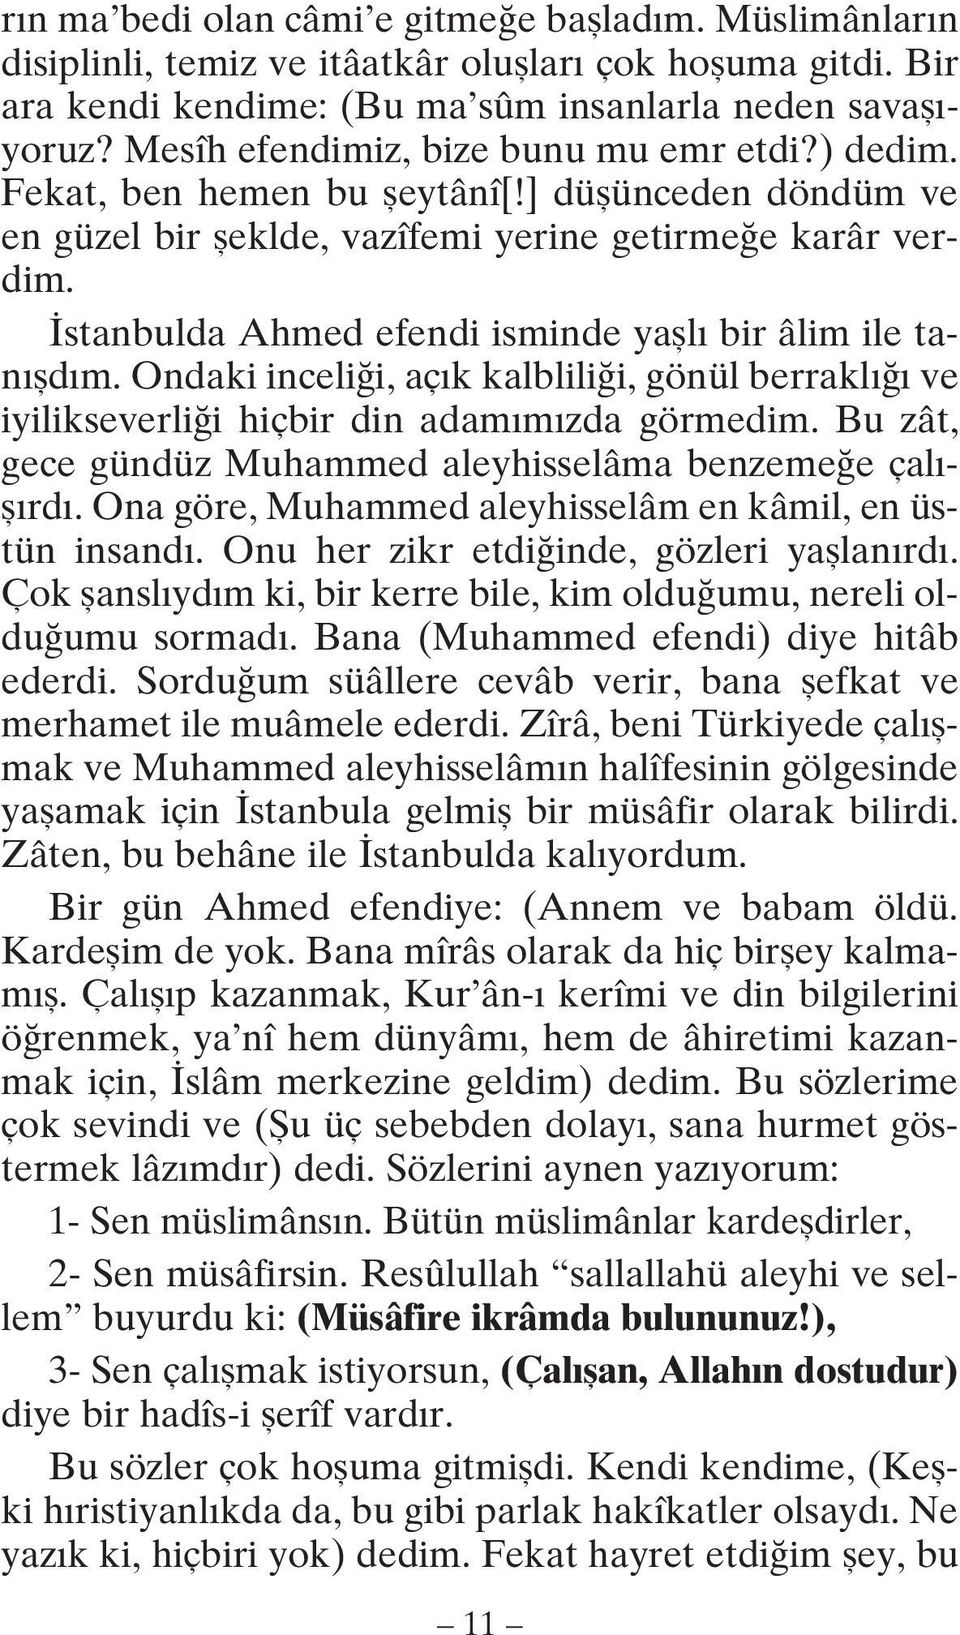 İstanbulda Ahmed efendi isminde yaşlı bir âlim ile tanışdım. Ondaki inceliği, açık kalbliliği, gönül berraklığı ve iyilikseverliği hiçbir din adamımızda görmedim.